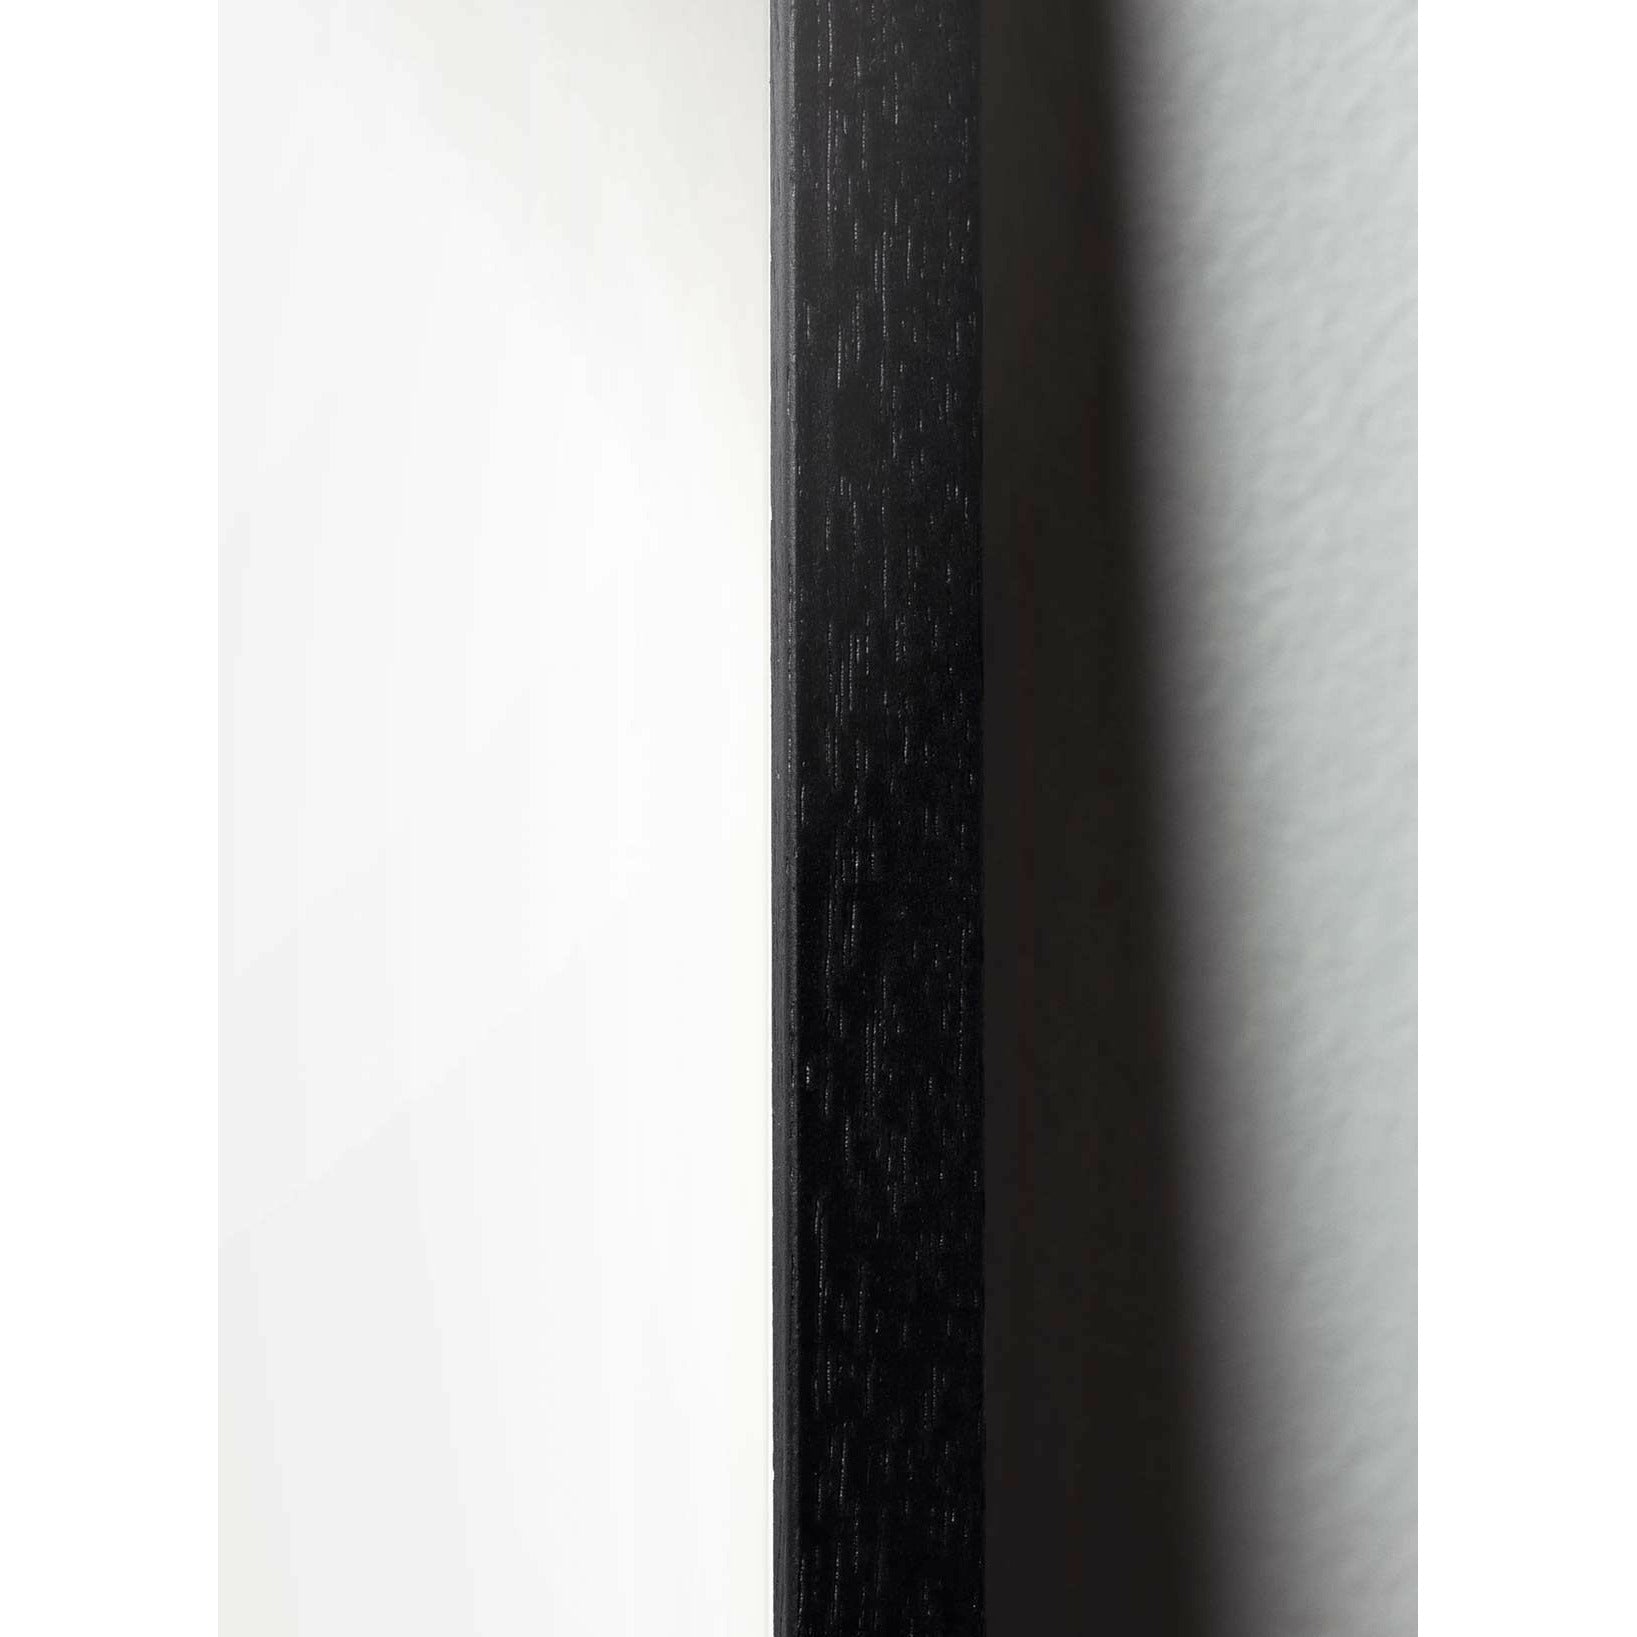 Póster de formato de cruce de huevo de creación, marco en madera lacada en negro 50x70 cm, negro